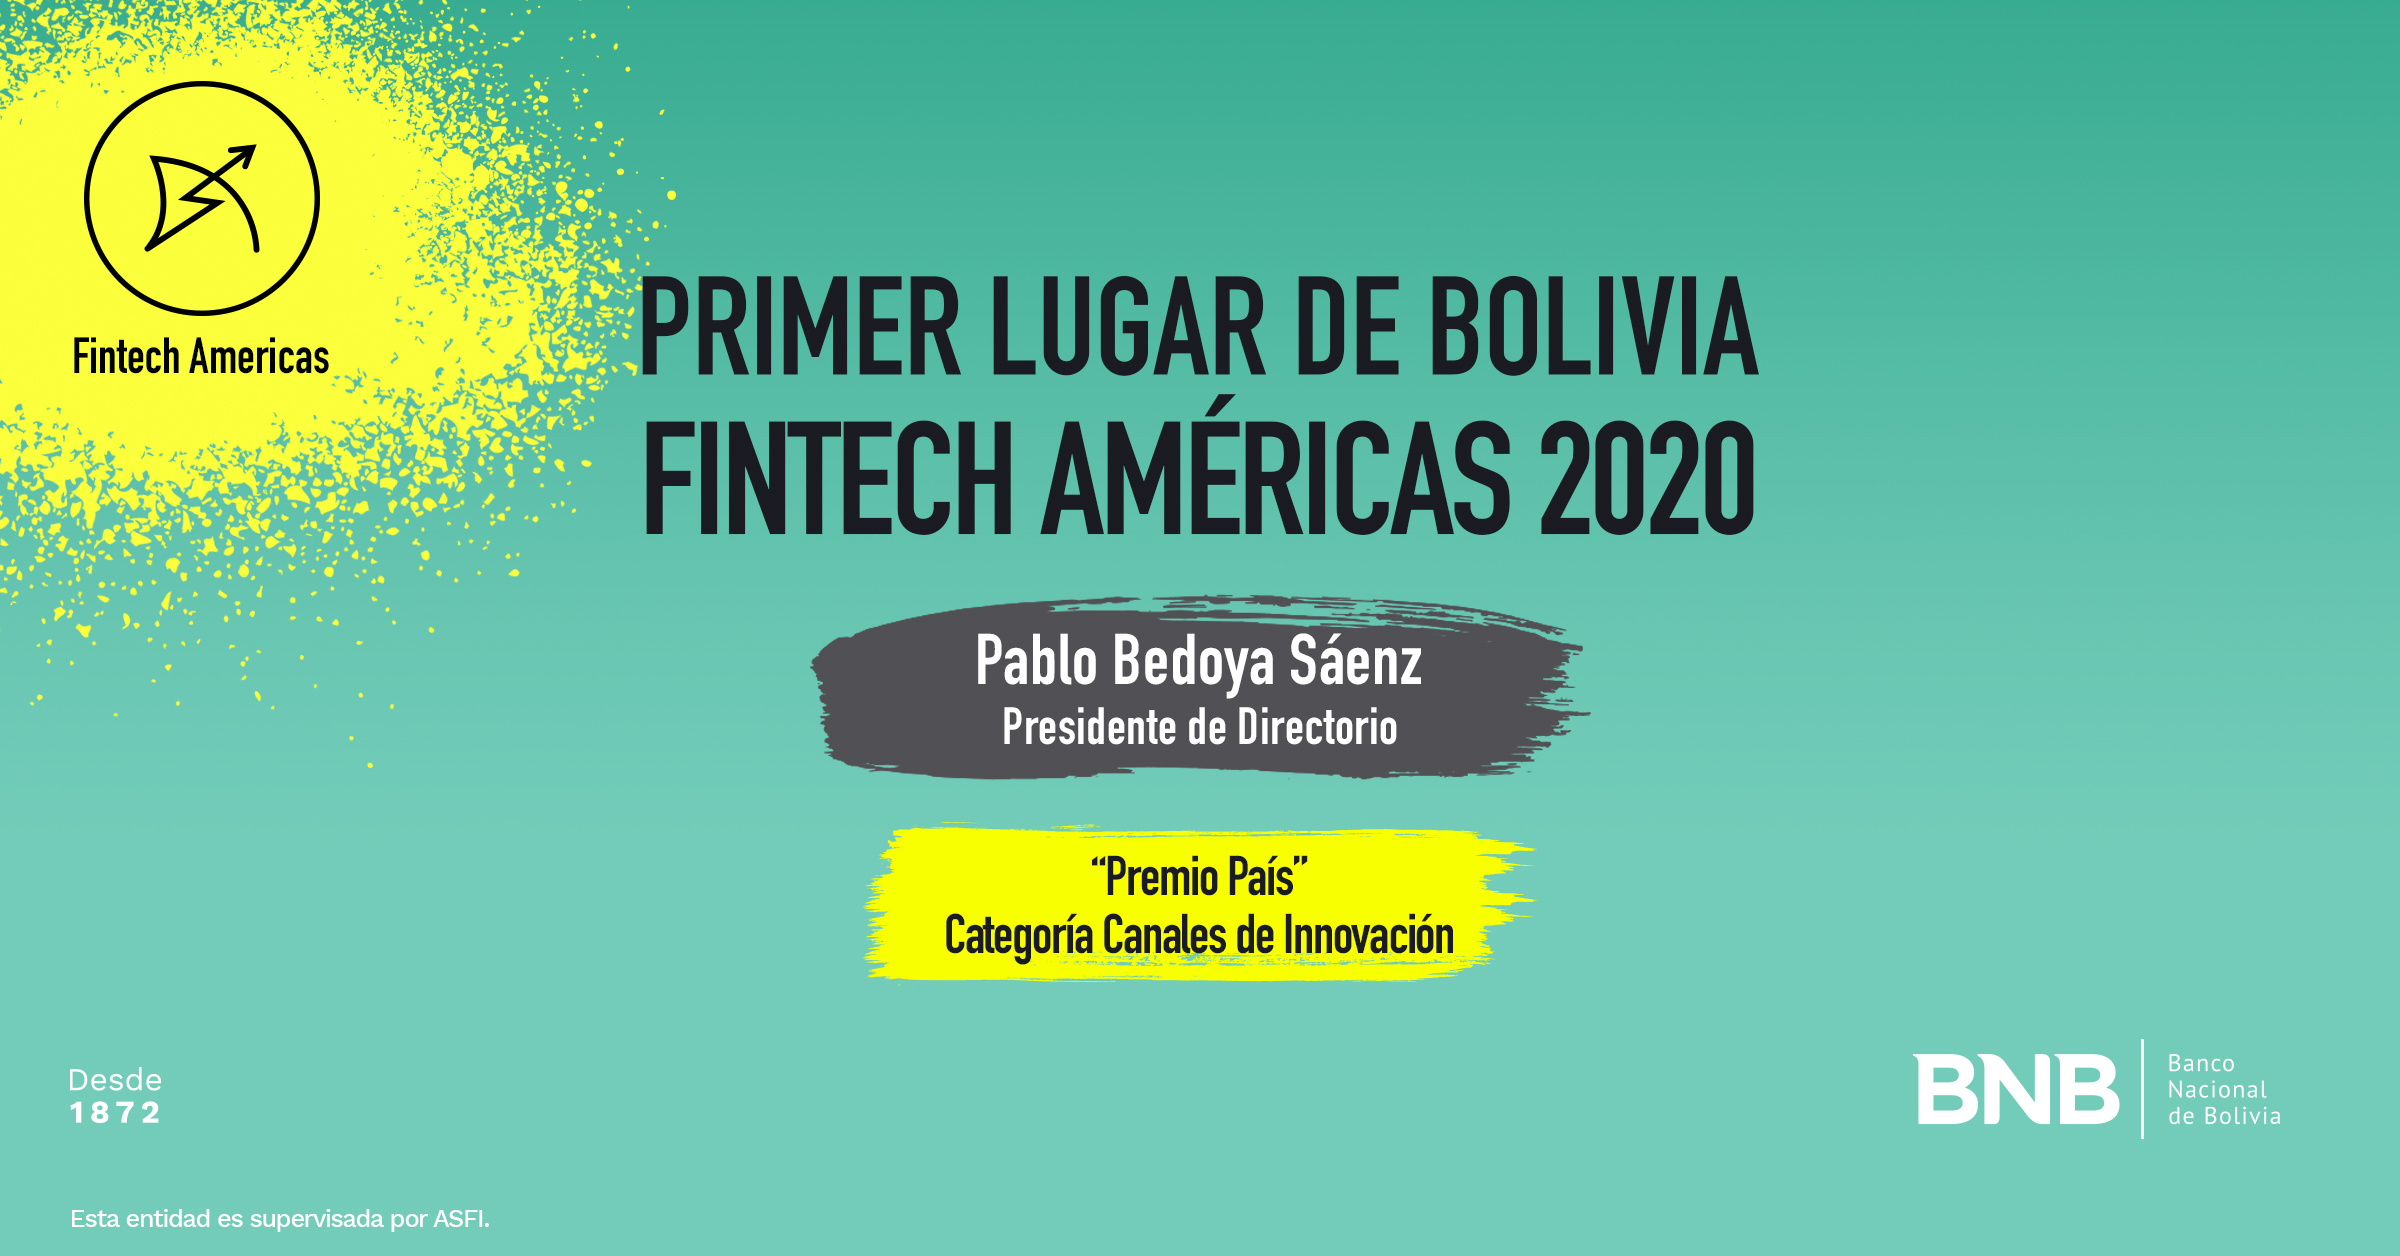 Pablo Bedoya, en nombre del BNB, recibe el primer lugar a los Innovadores Financieros en las Américas 2020.